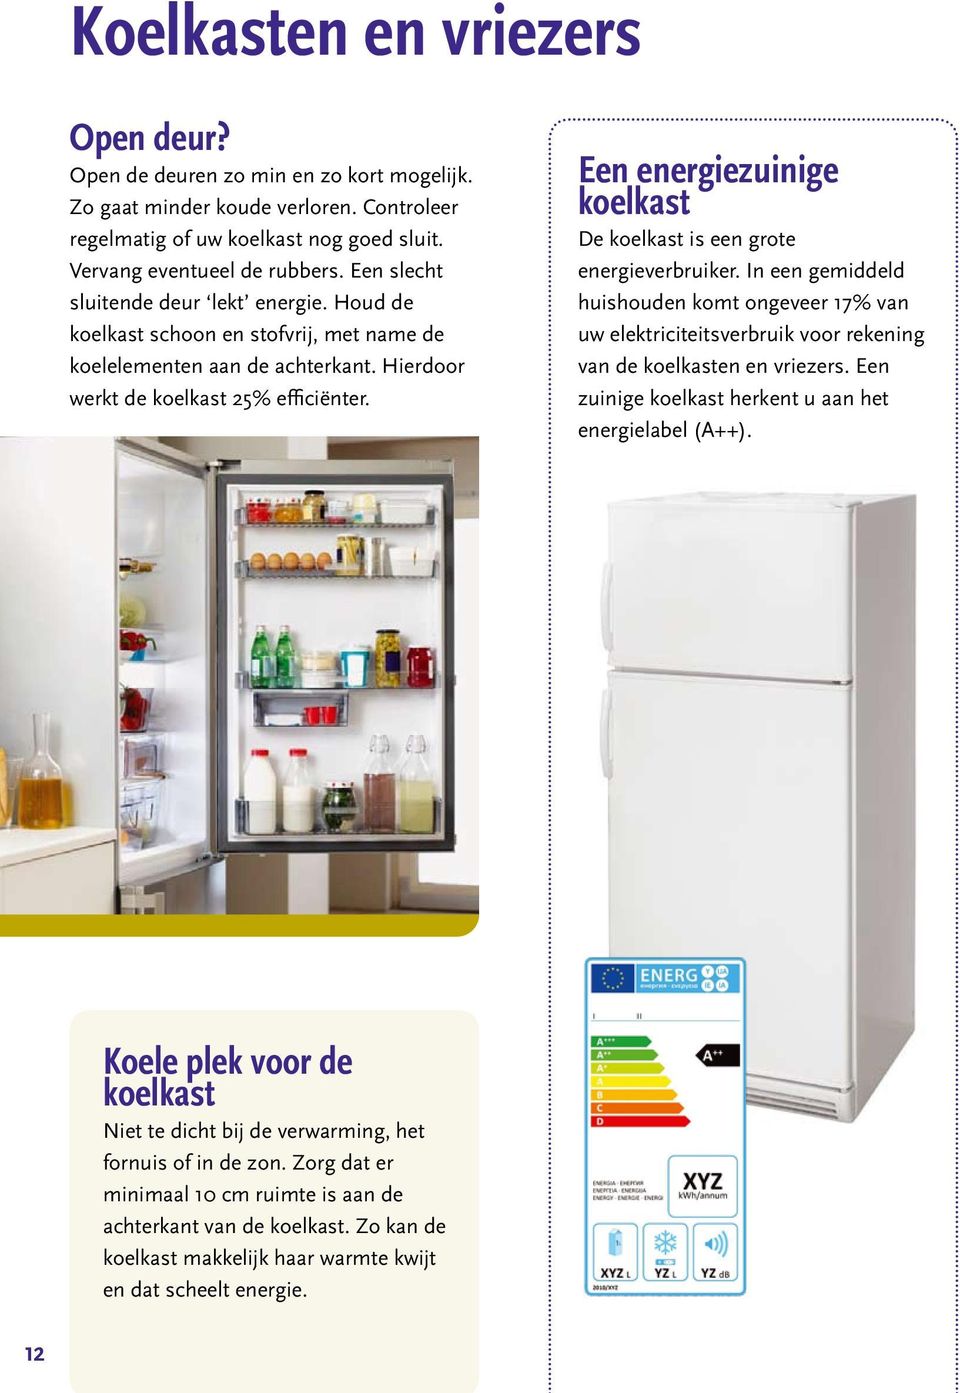 Een energiezuinige koelkast De koelkast is een grote energieverbruiker. In een gemiddeld huishouden komt ongeveer 17% van uw elektriciteitsverbruik voor rekening van de koelkasten en vriezers.